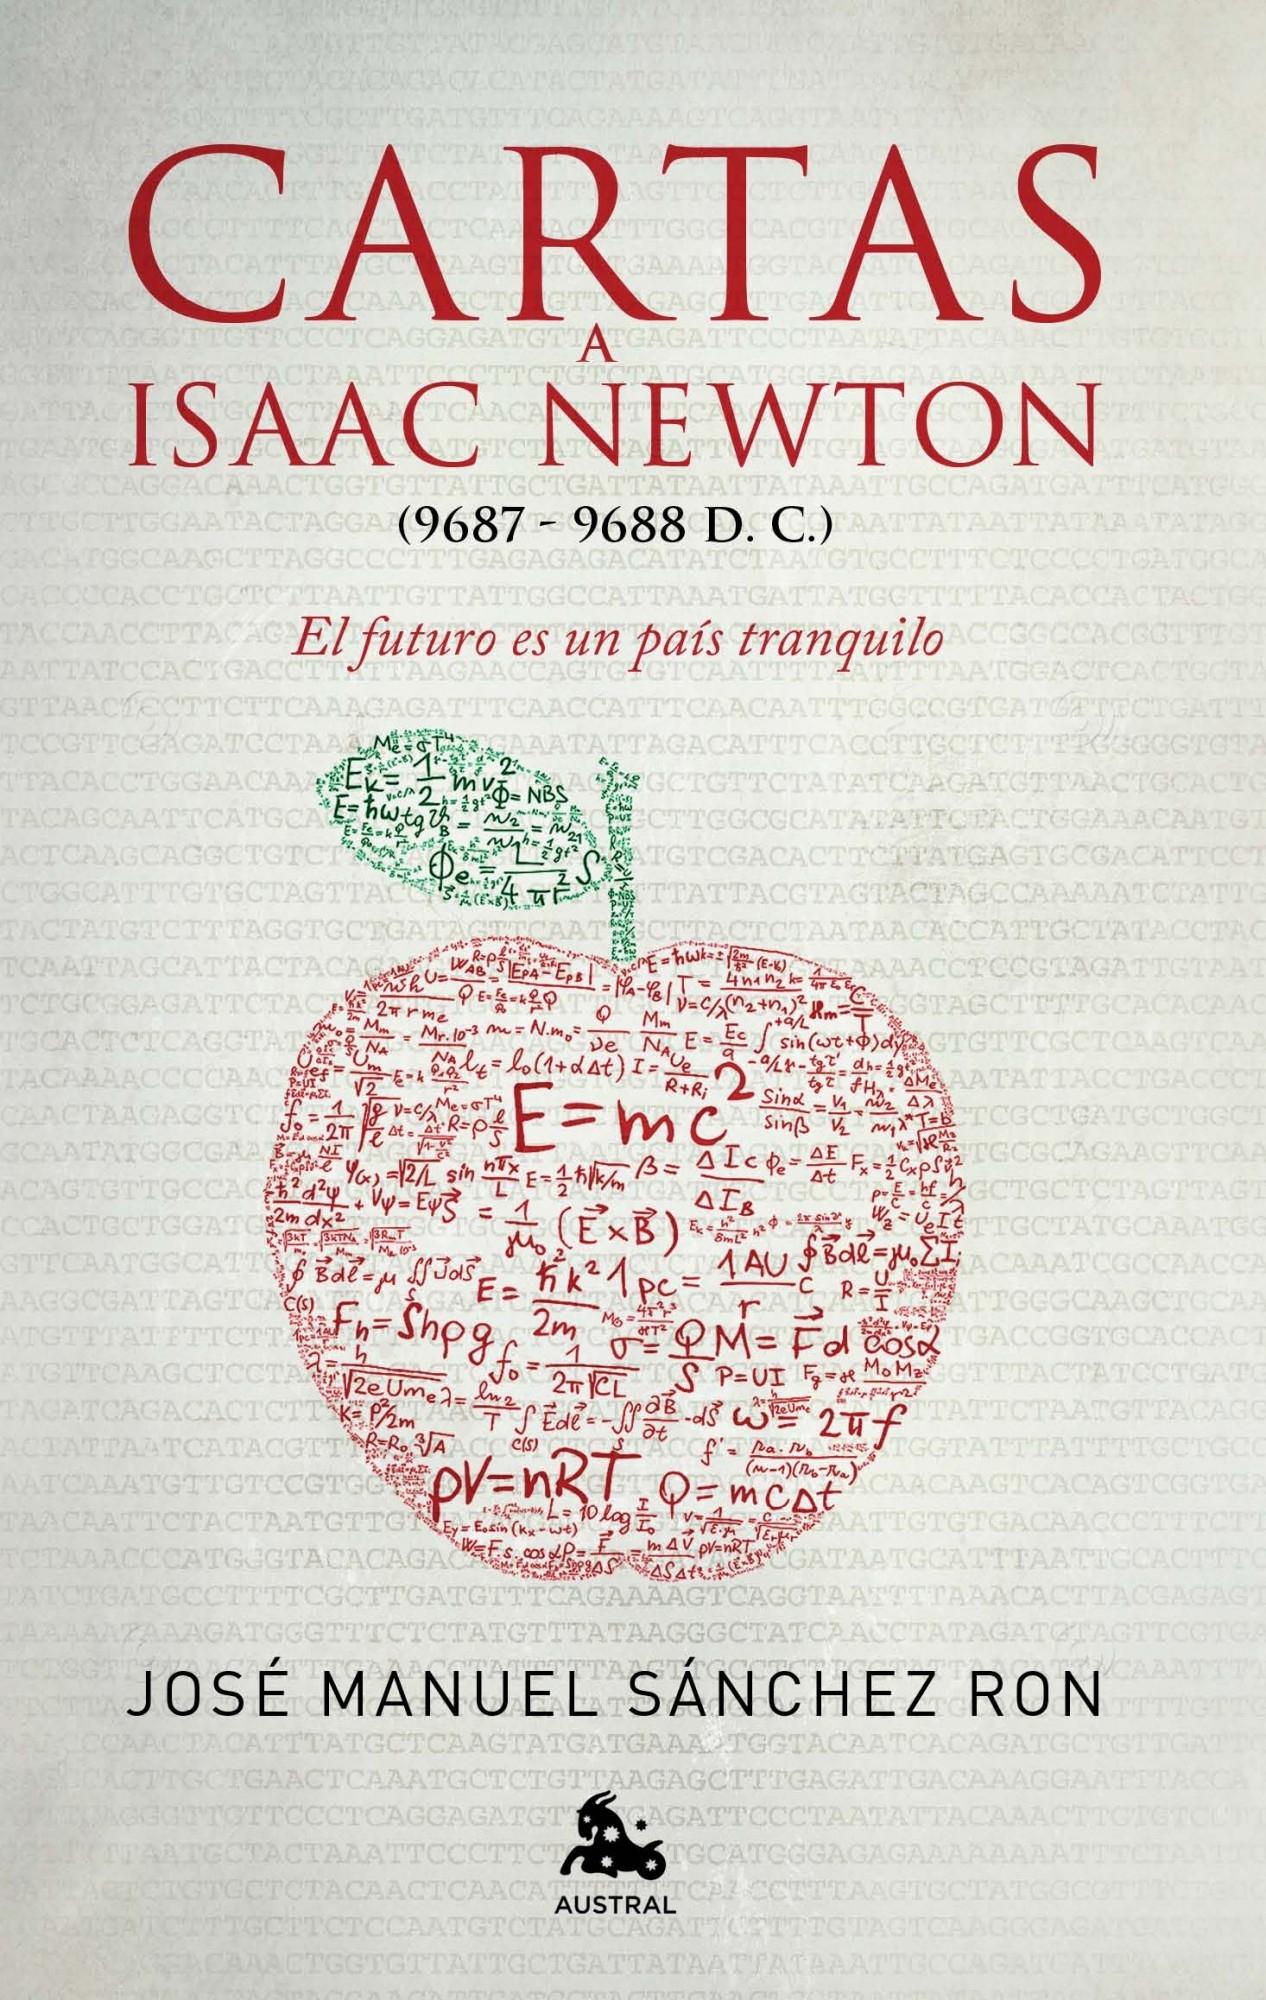 Cartas a Isaac Newton "El futuro es un país tranquilo". 